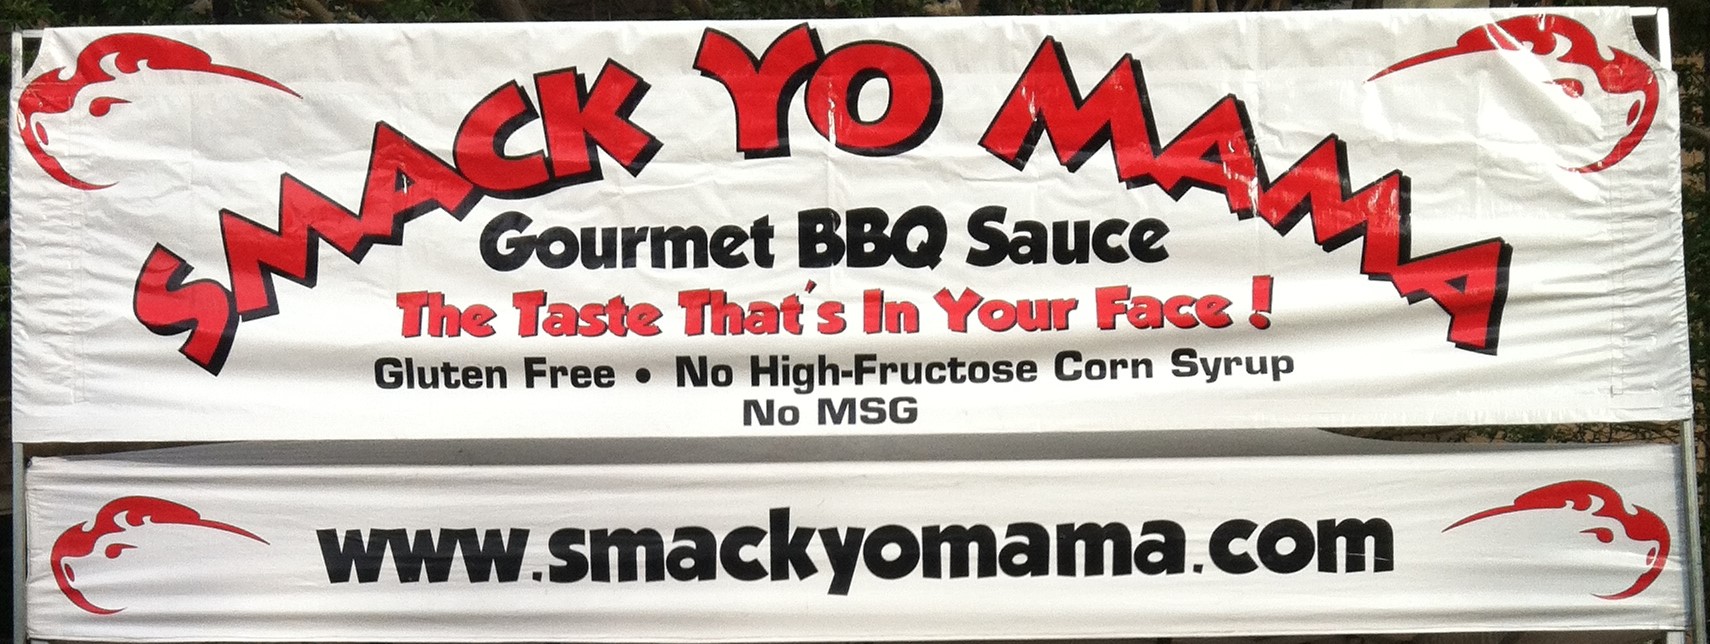 Smack Yo Mama Gourmet Bbq Sauce